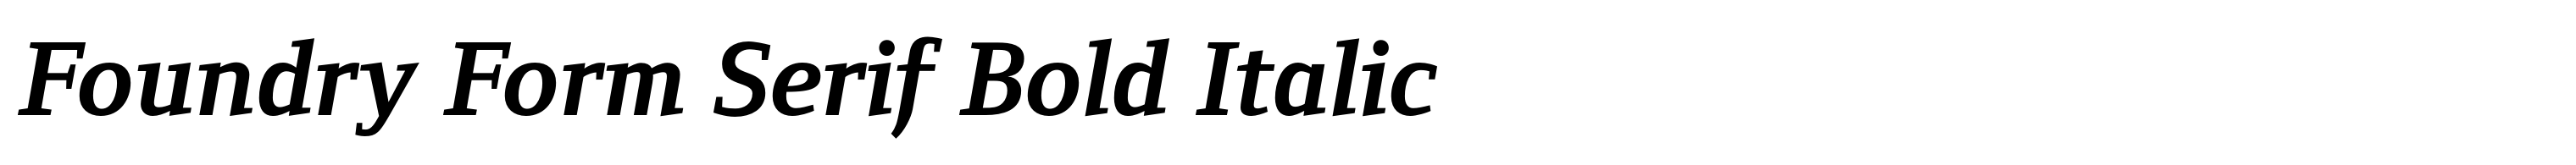 Foundry Form Serif Bold Italic